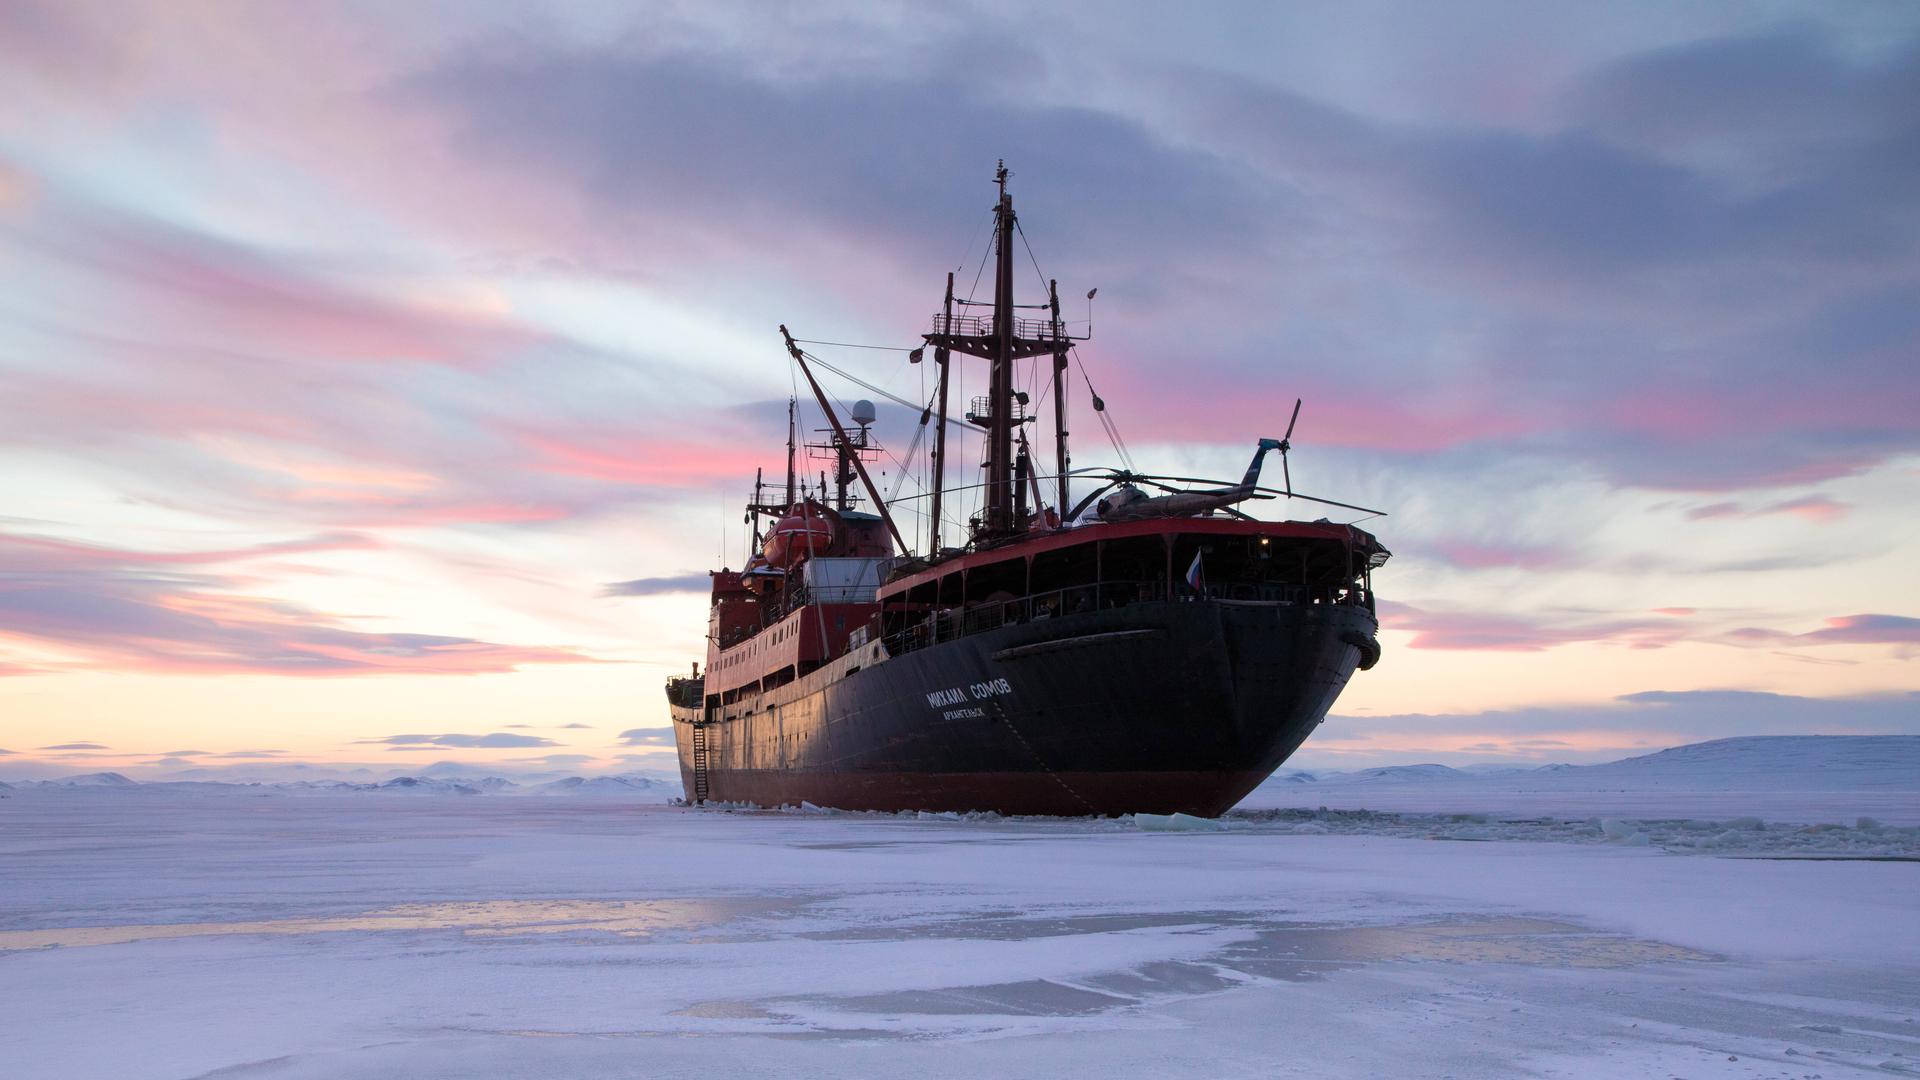 Auf diesem Bild ist das Forschungs- und Expeditionsschiff Mikhail Somov zu sehen, das in der Vilkitsky-Straße zwischen dem russischen Festland und dem Sewernaja-Semlja-Archipel im Arktischen Ozean im Eis festsitzt. 